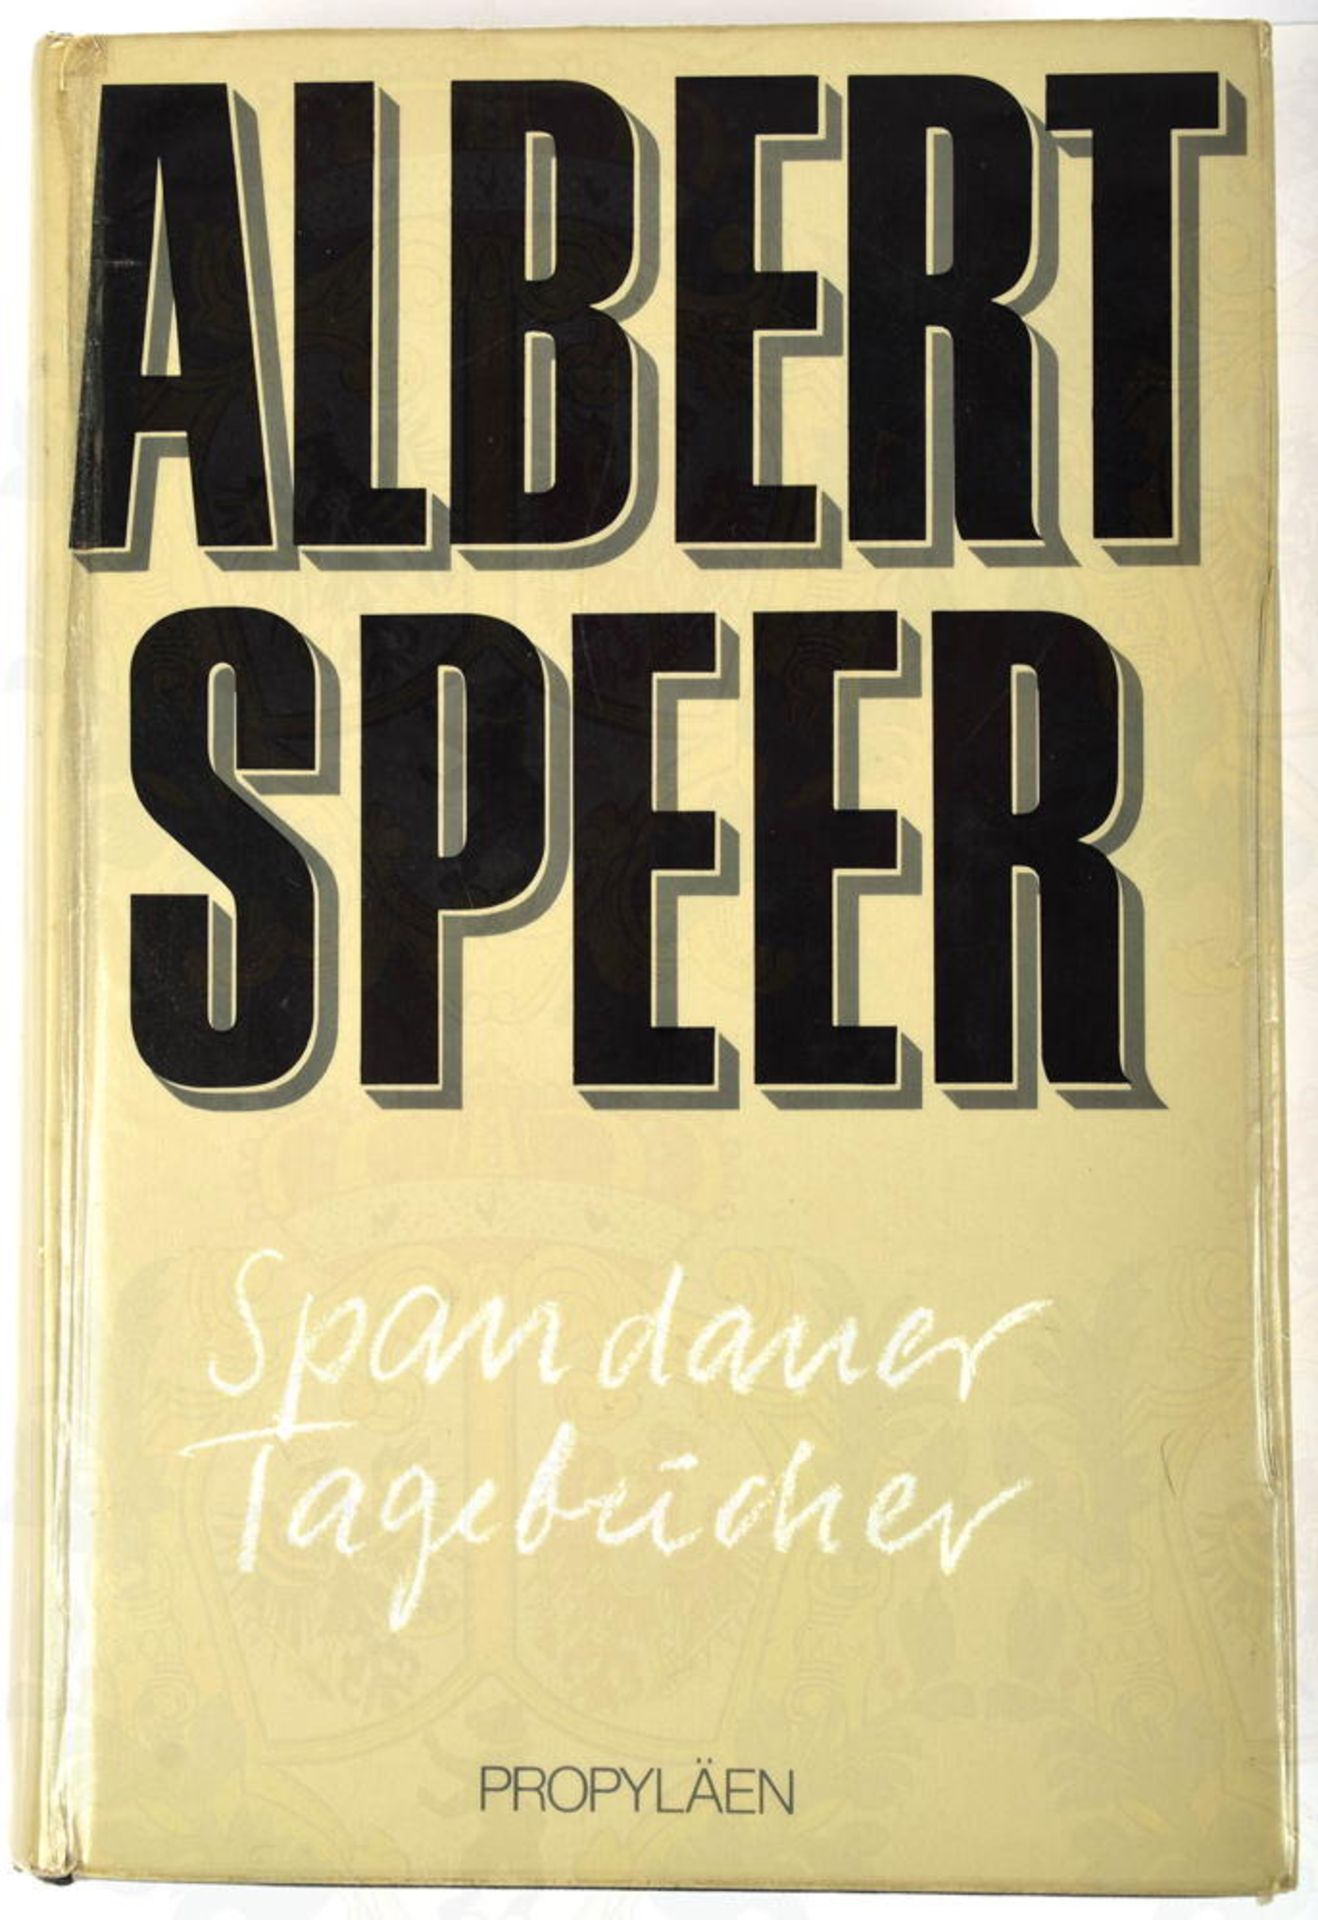 SPEER, ALBERT